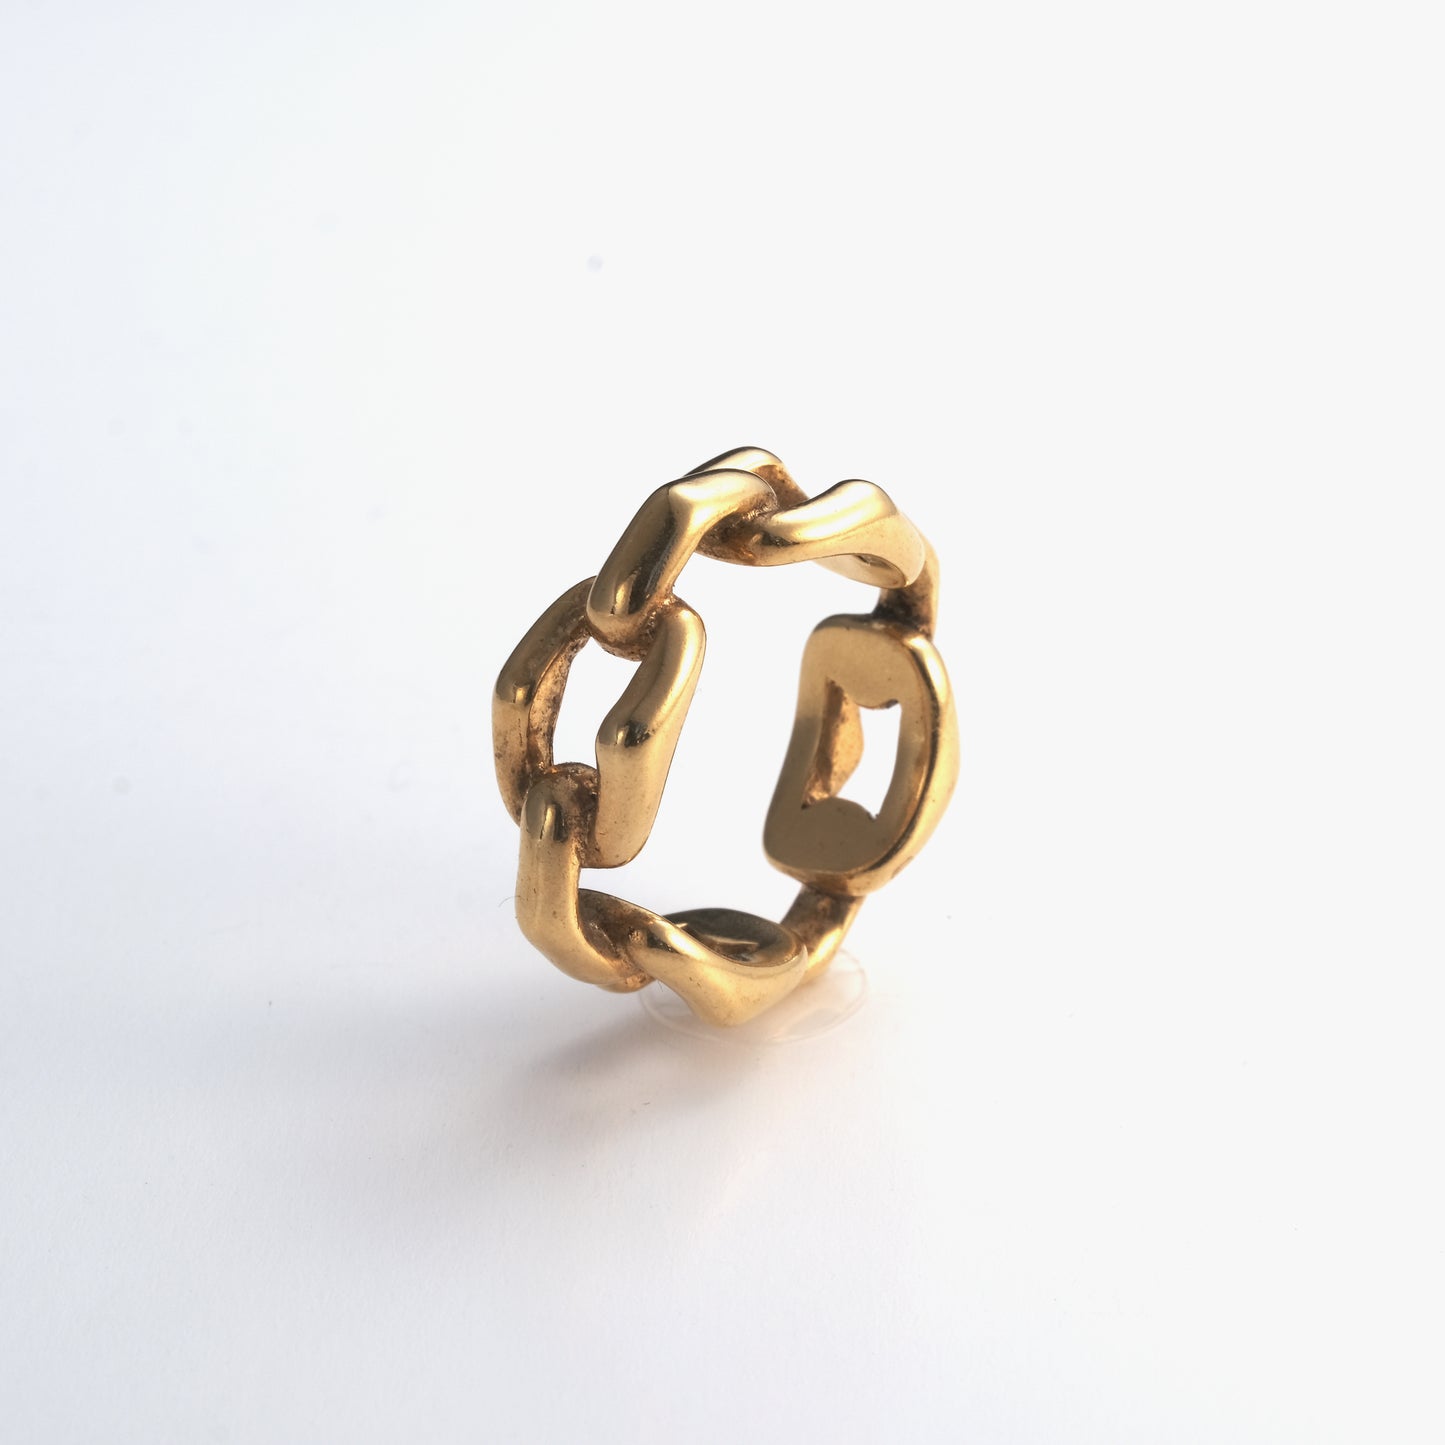 Rita gold ring